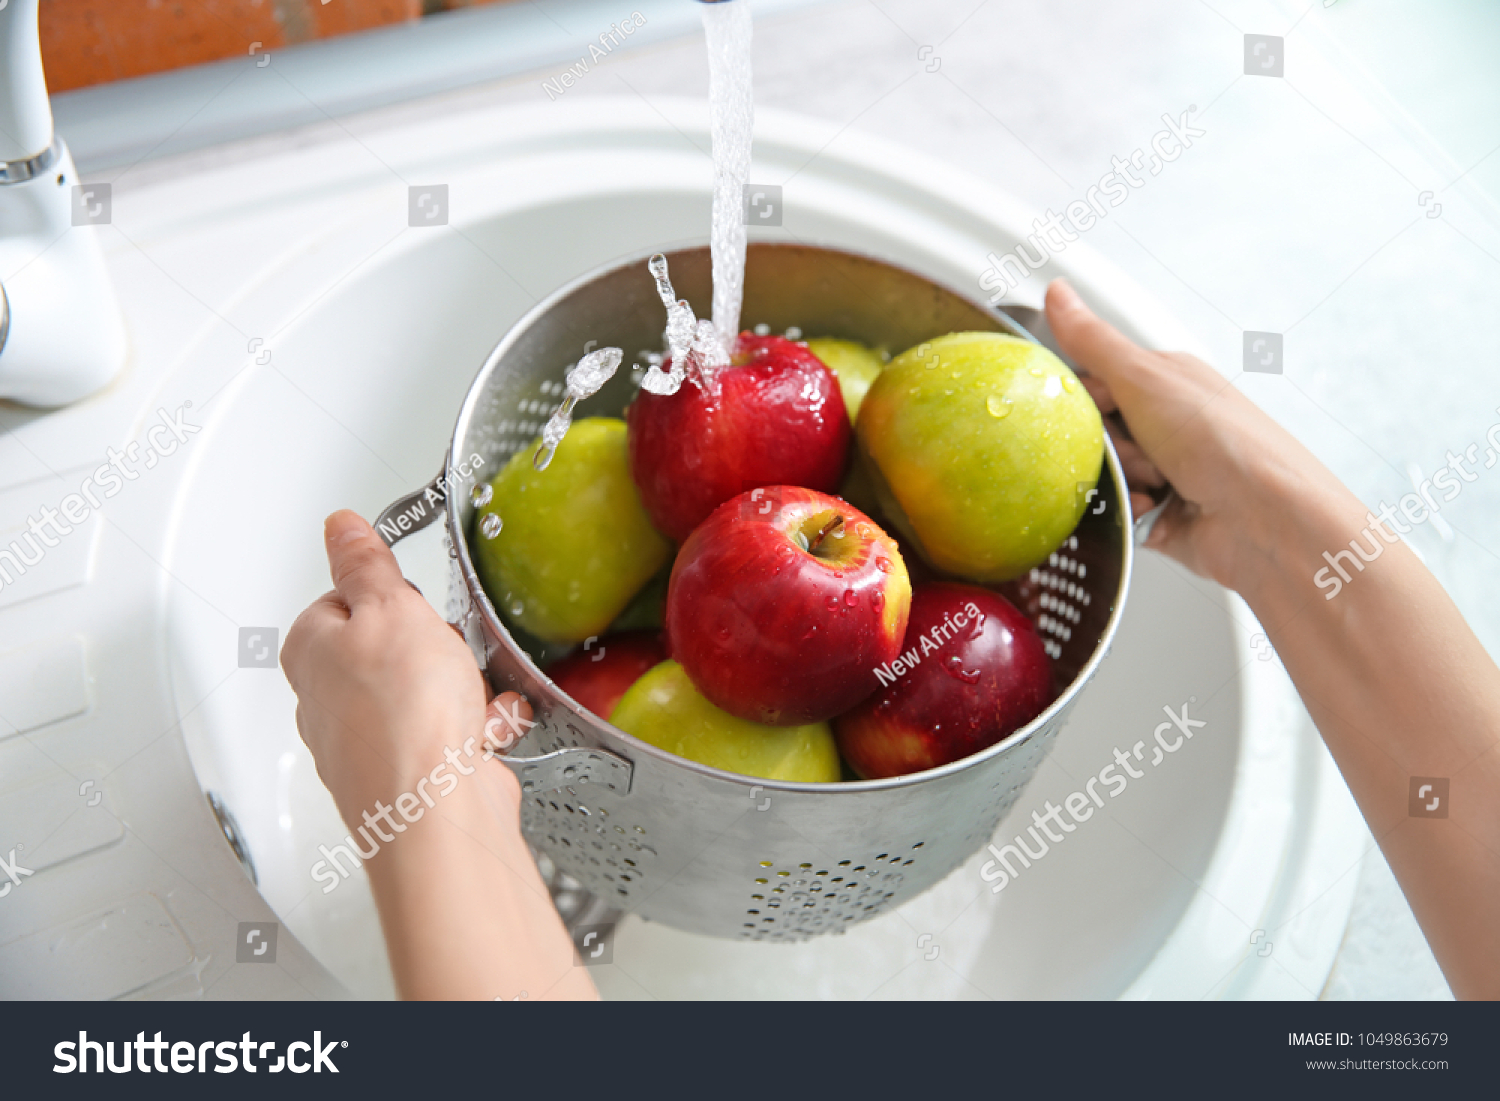 Правильно моем фрукты. Мытье фруктов. Вымыть фрукты. Мытые яблоки. Помыть яблоки.